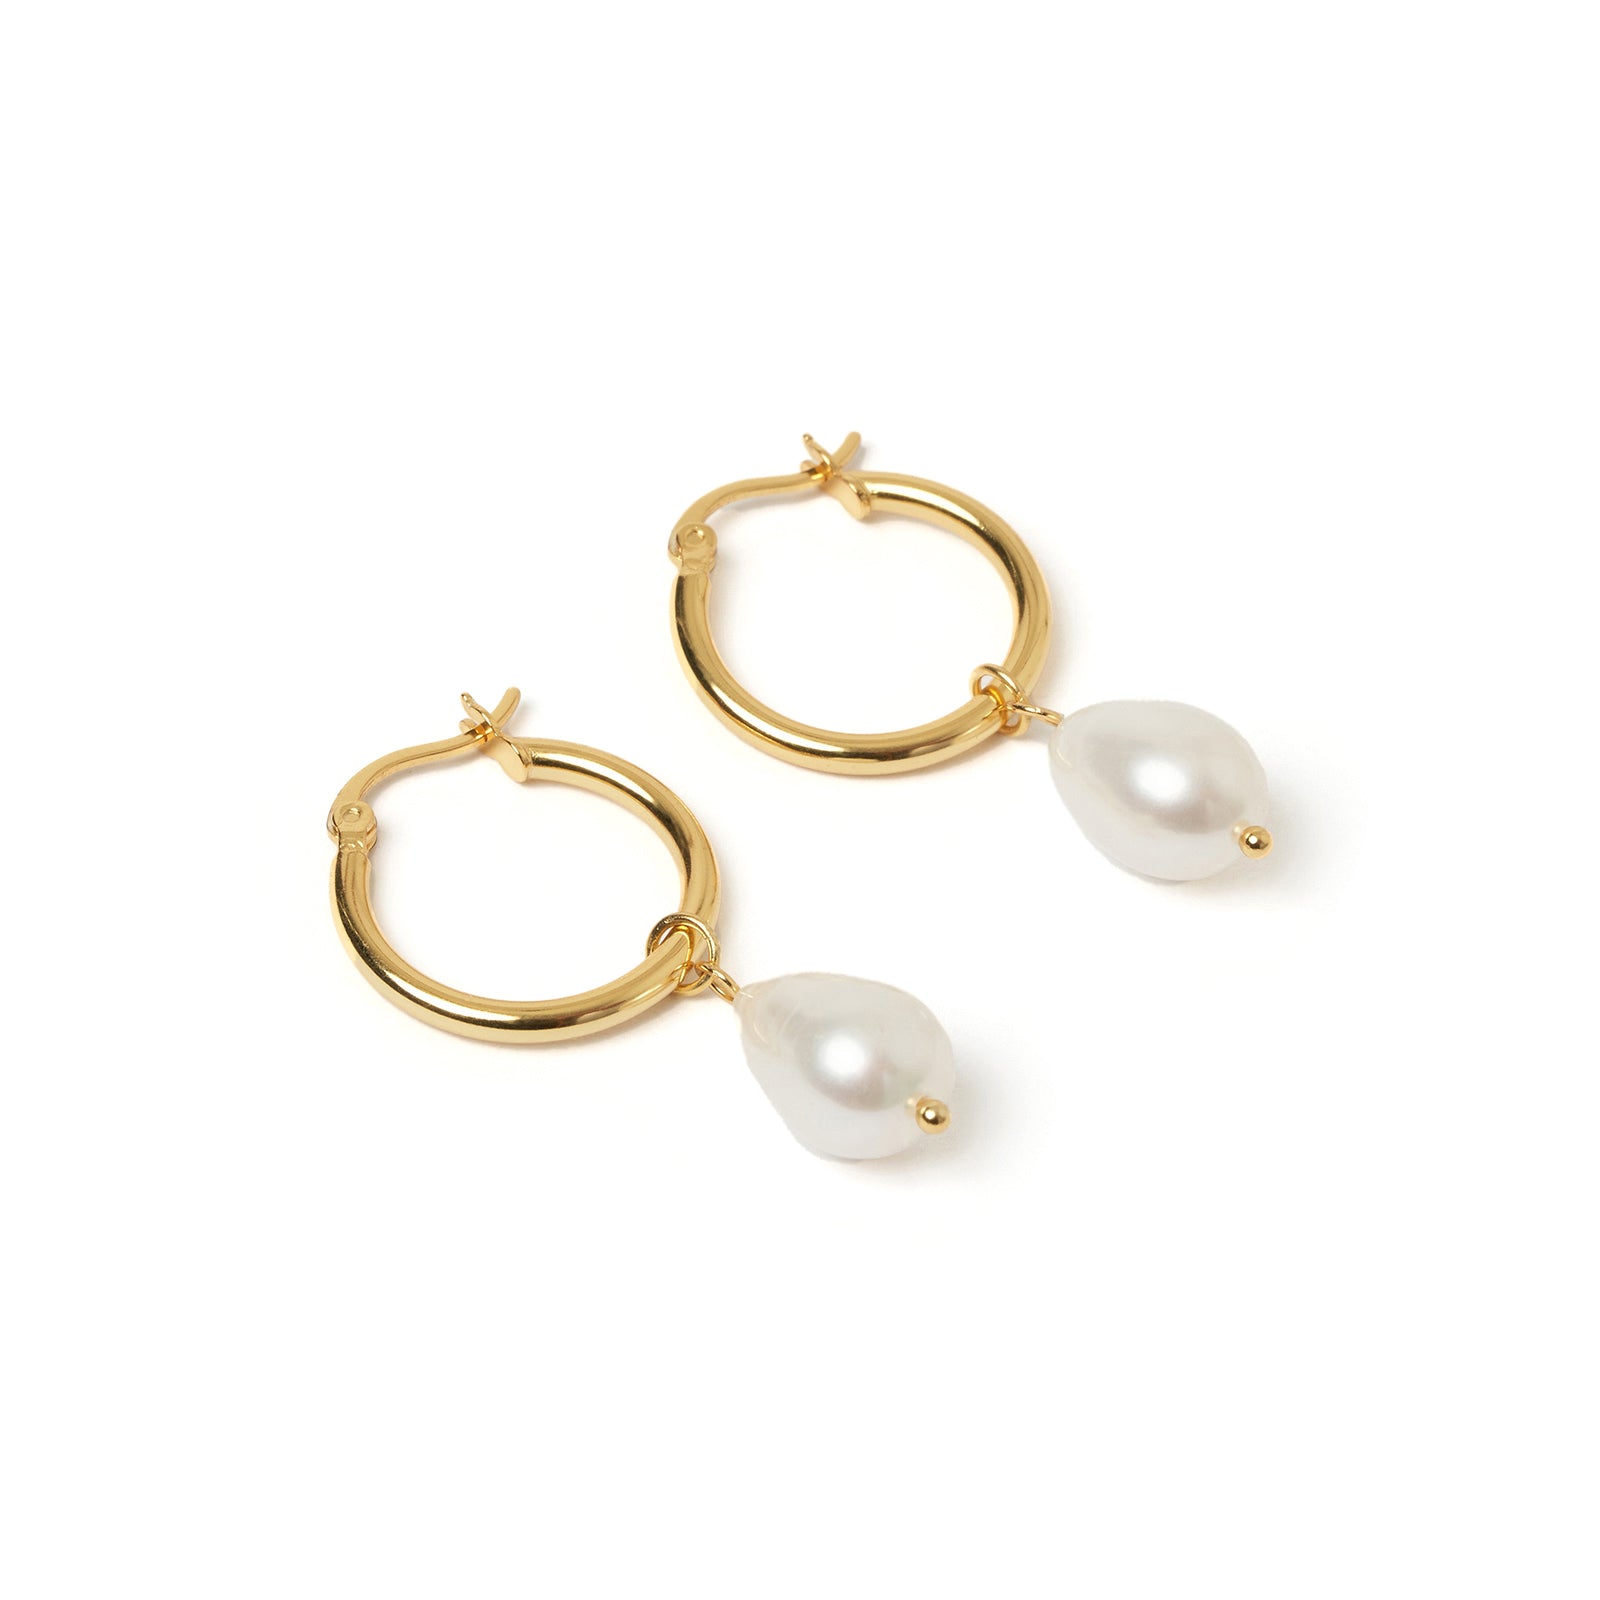 Augusta Gold Hoop & Freshwater Pearl Earrings - Small